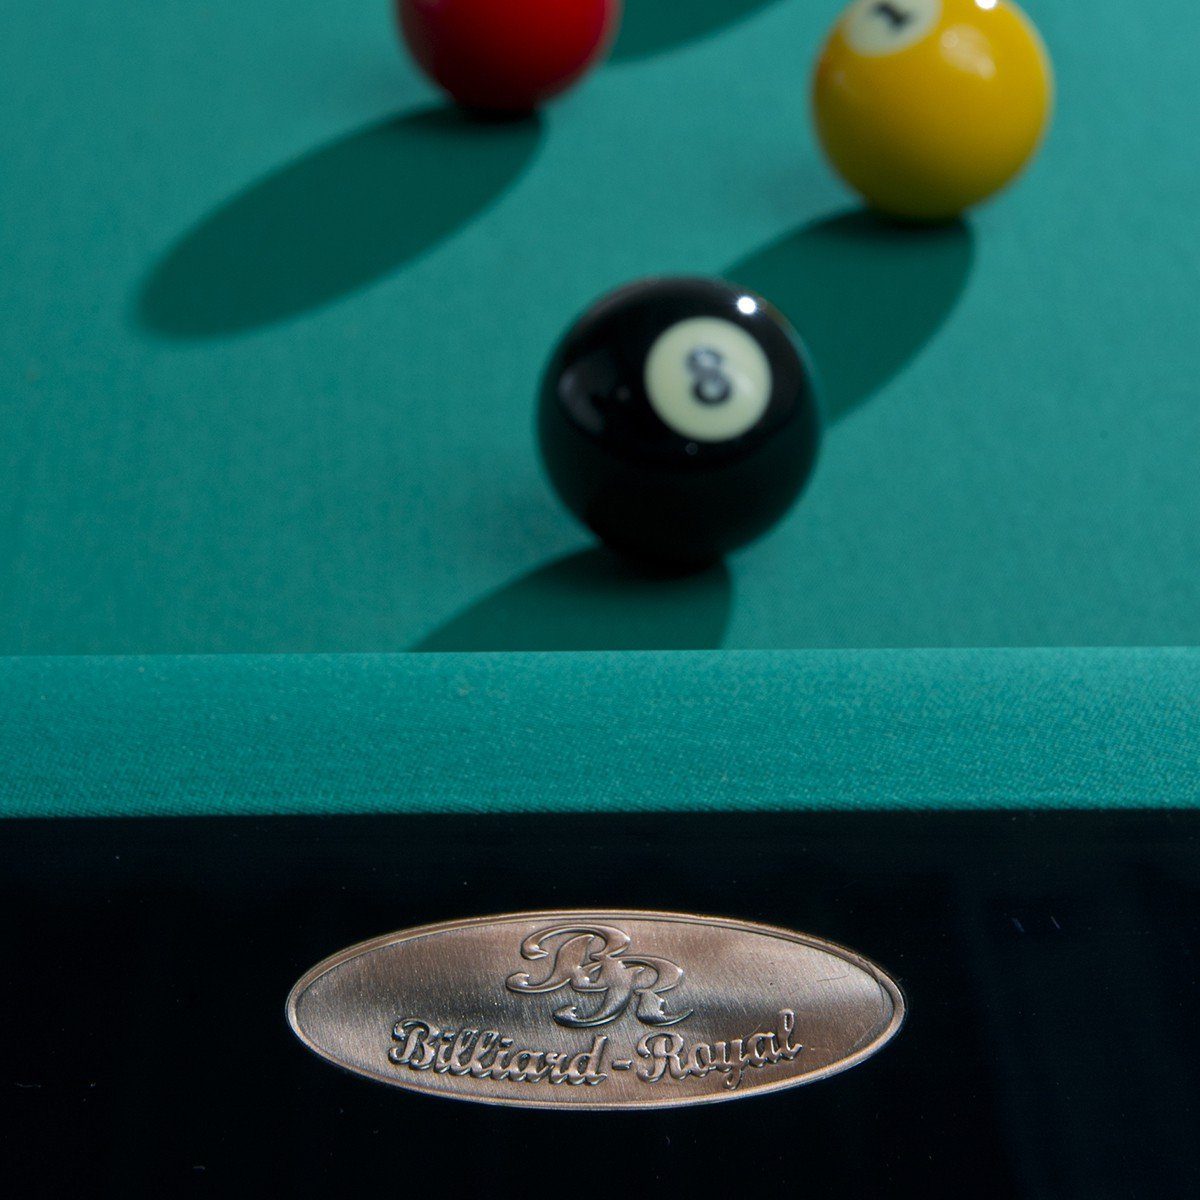 Billiard-Royal Billardtisch Olivia beliebter Ballauffangtaschen aus Echtleder Gummi mm Hochwertige, / 3-teiliger Naturschieferplatte (30 Schwarz massive Ausführung in langlebige Banden mit ft., Dicke) Spielfläche aus (Hochwertige und Billiard-Royal® Qualität), und 55 K 7